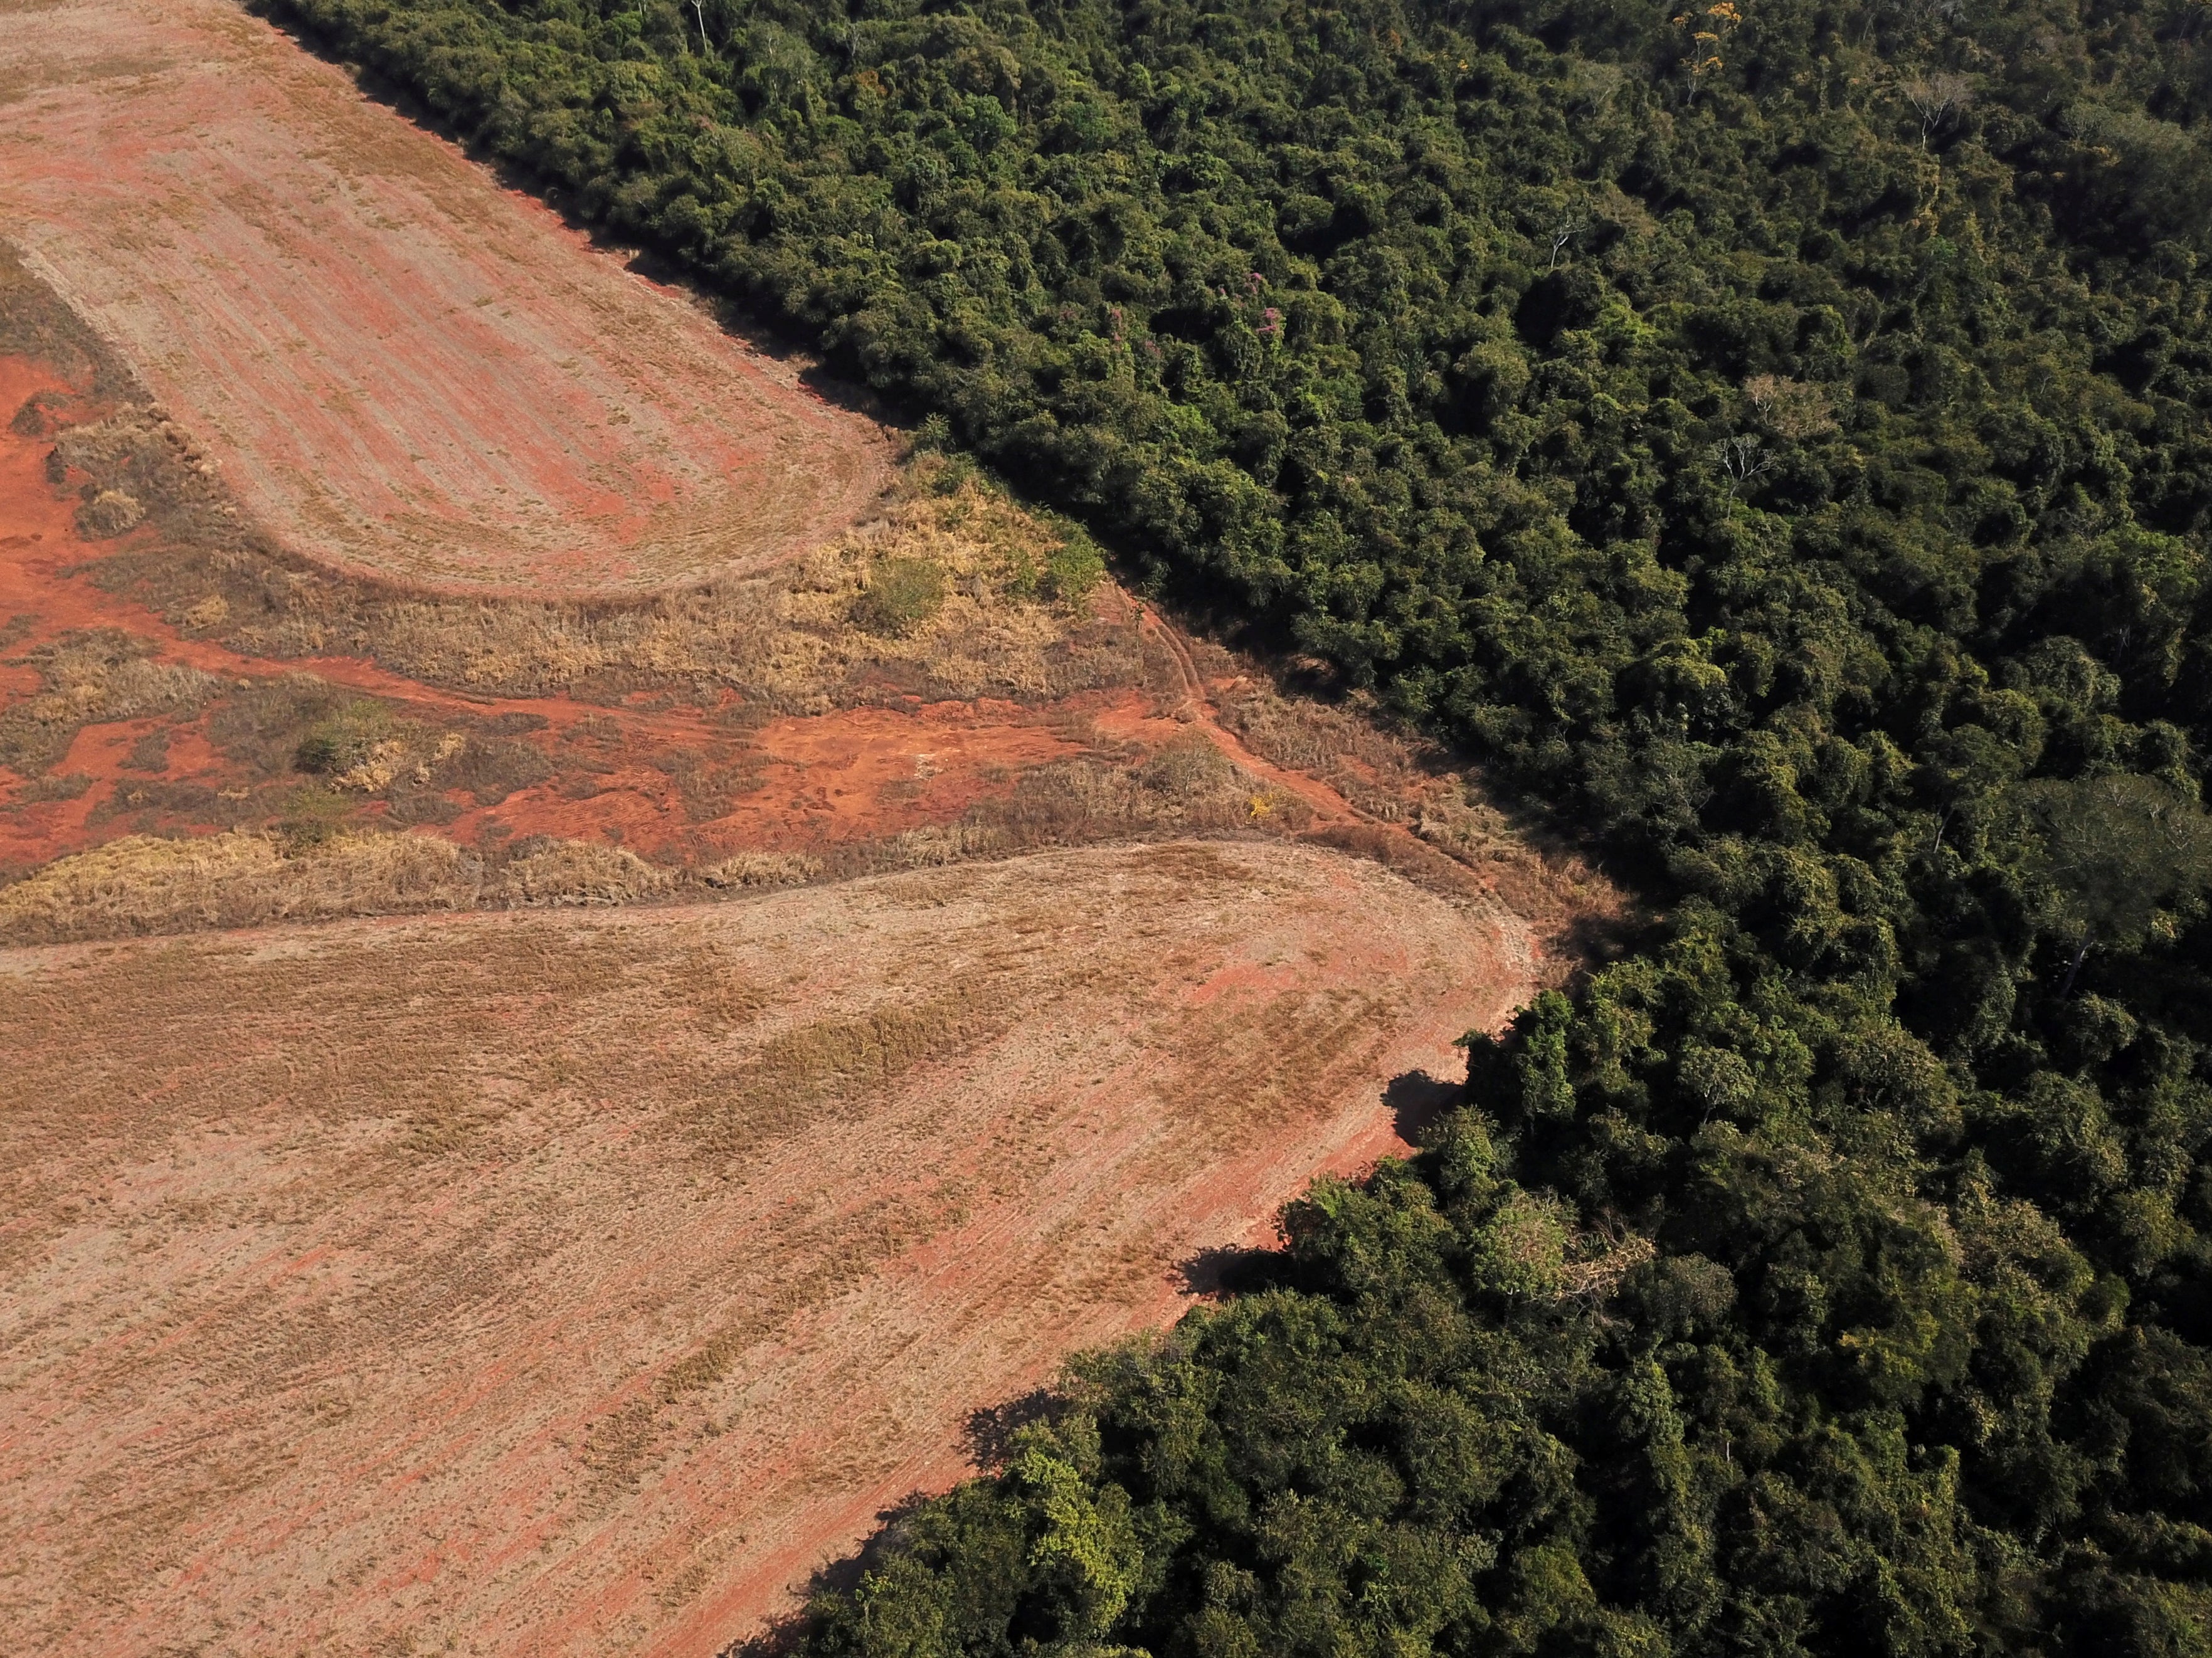 Deforestation in Mato Grosso state, Brazil